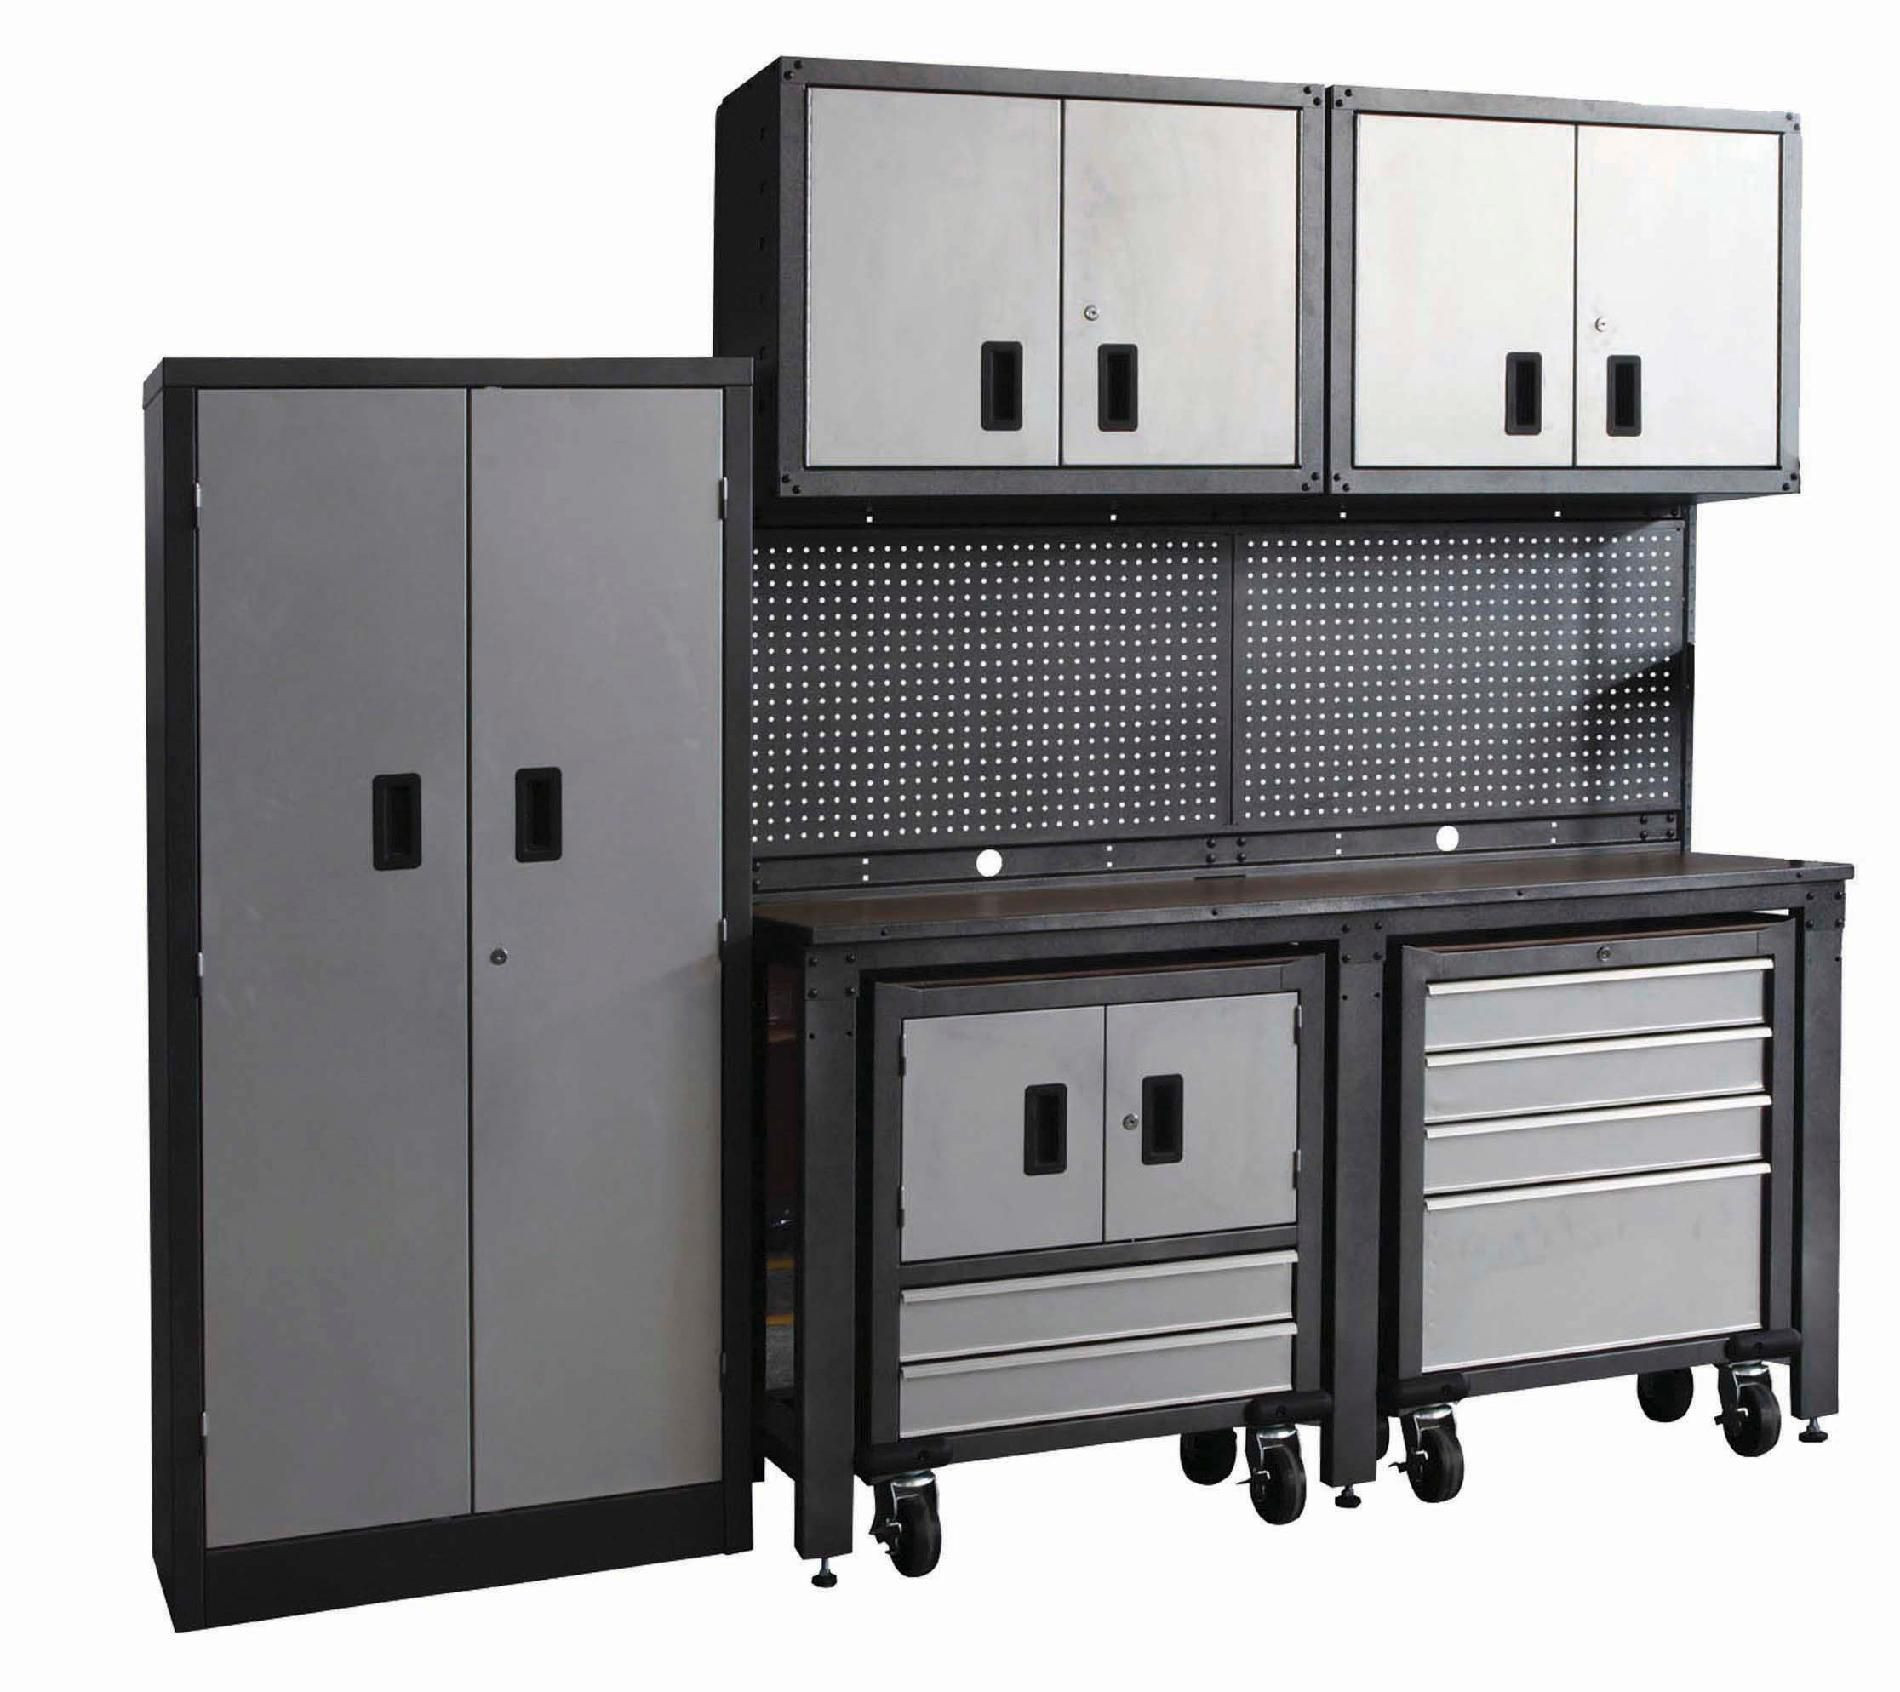 Sears Garage Organization
 International 8 piece Garage Modular Storage System